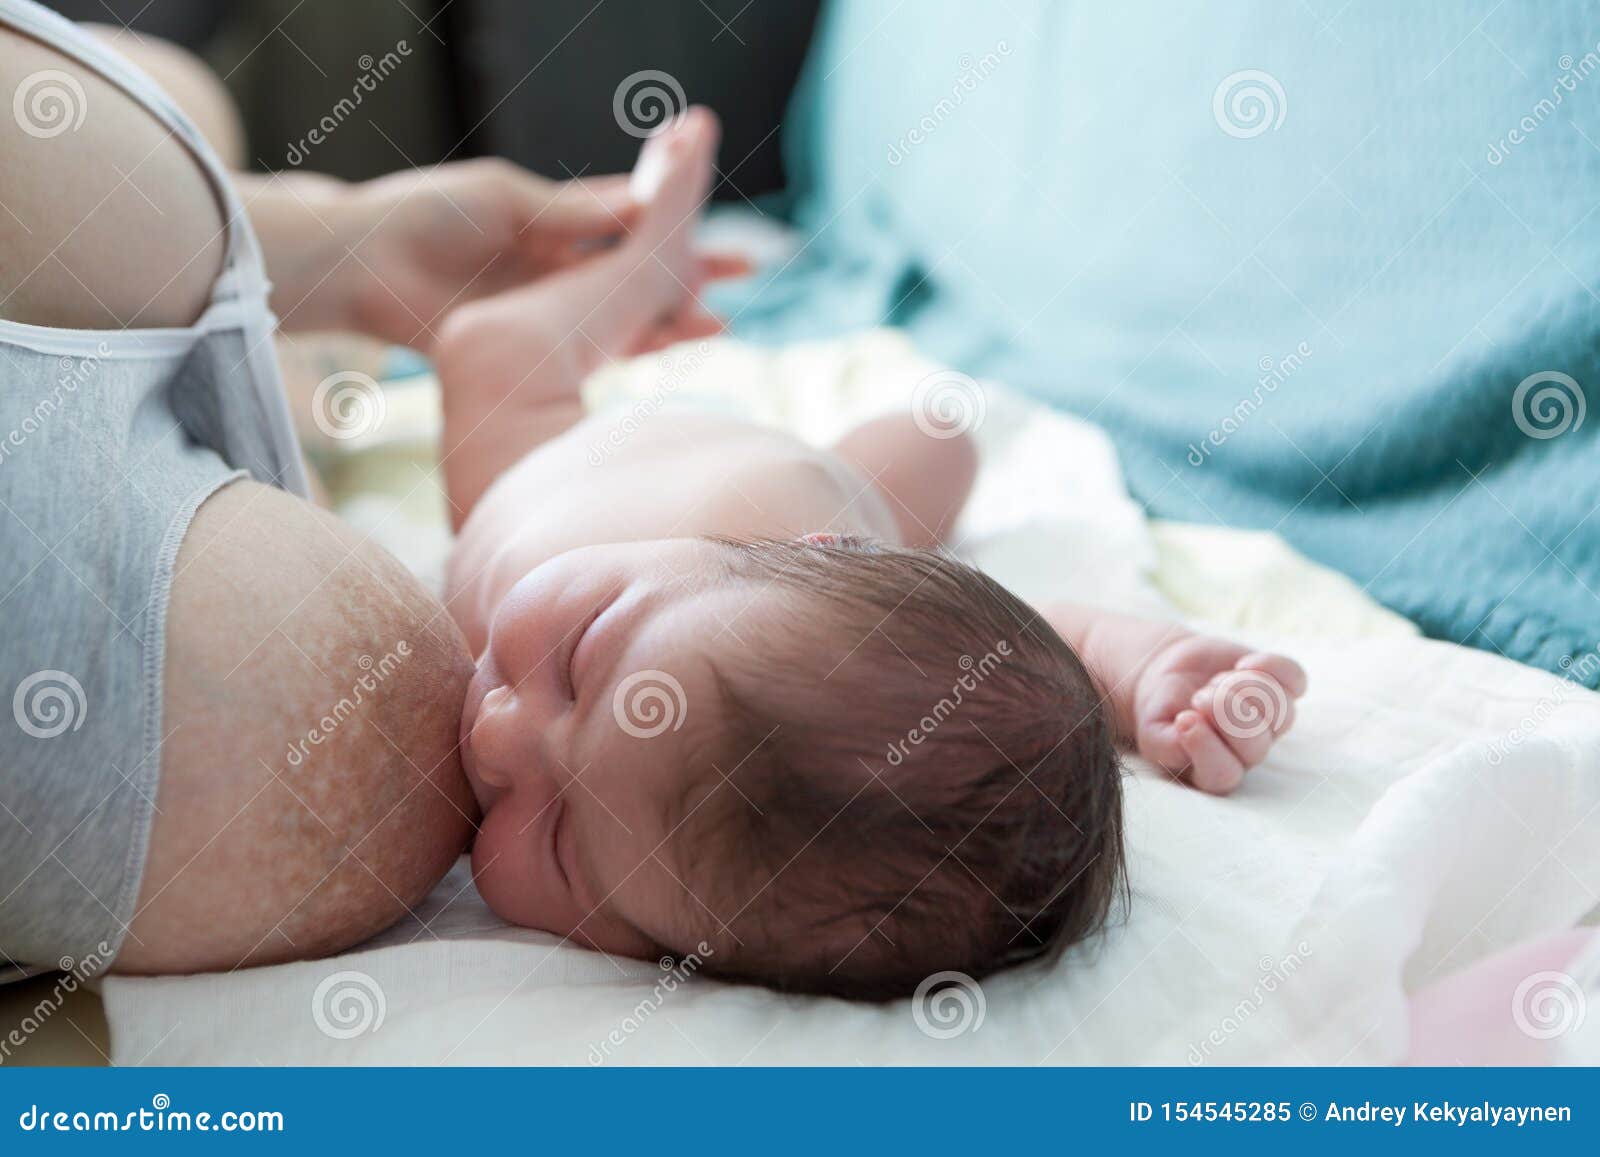 Грудное вскармливание и сон новорожденного